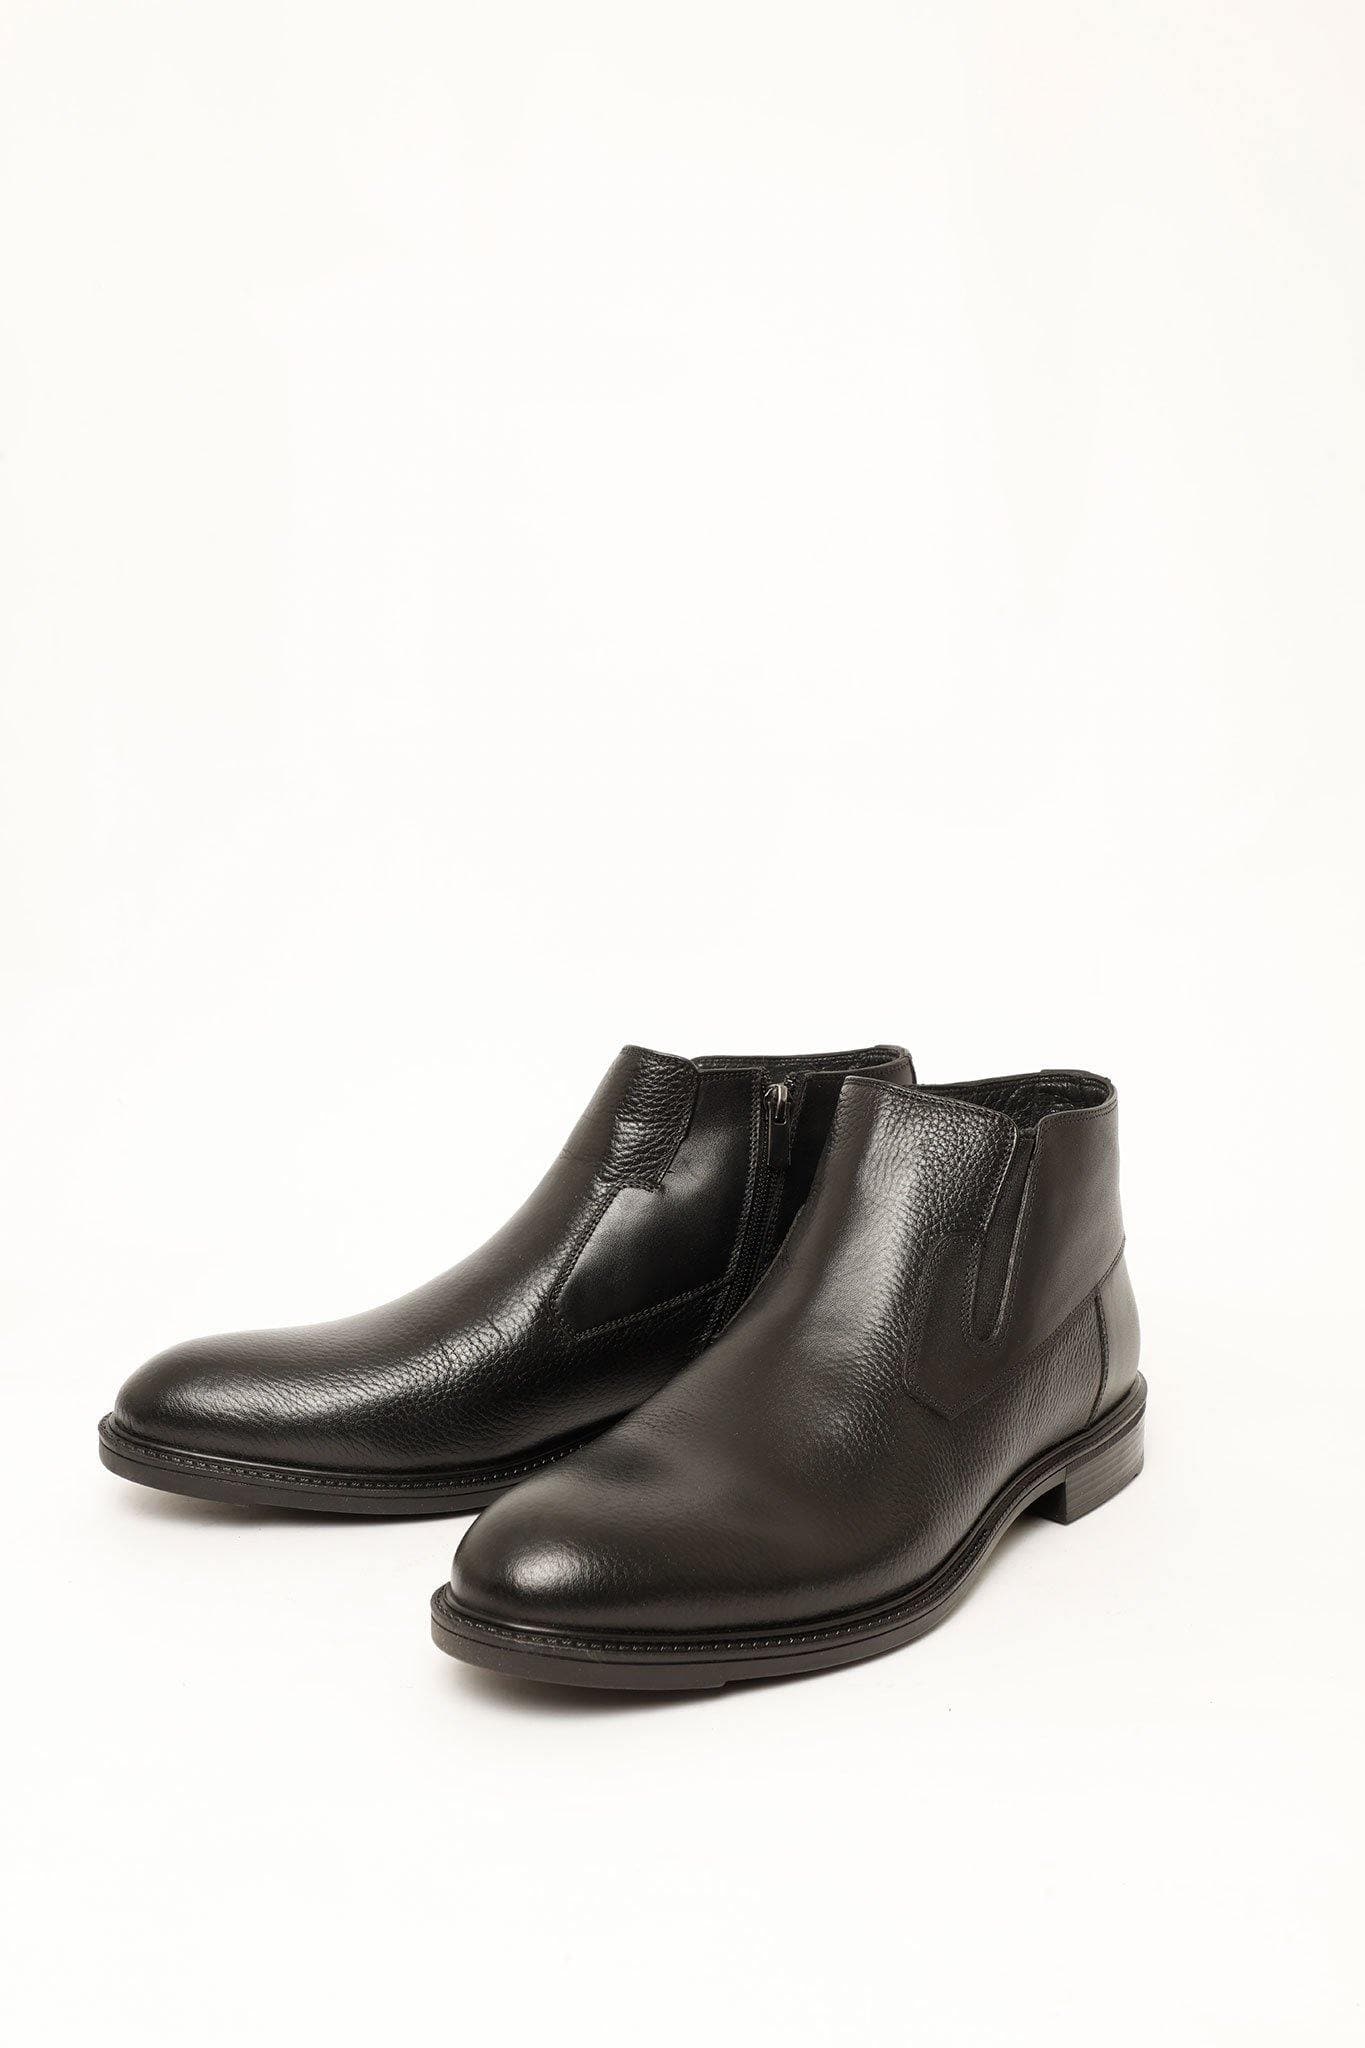 PB ARROW MEN'S ANKLE BOOTS 10635, SHOE, CORADO, black, boots, leather, men, shoe, coradomoda, coradomoda.com